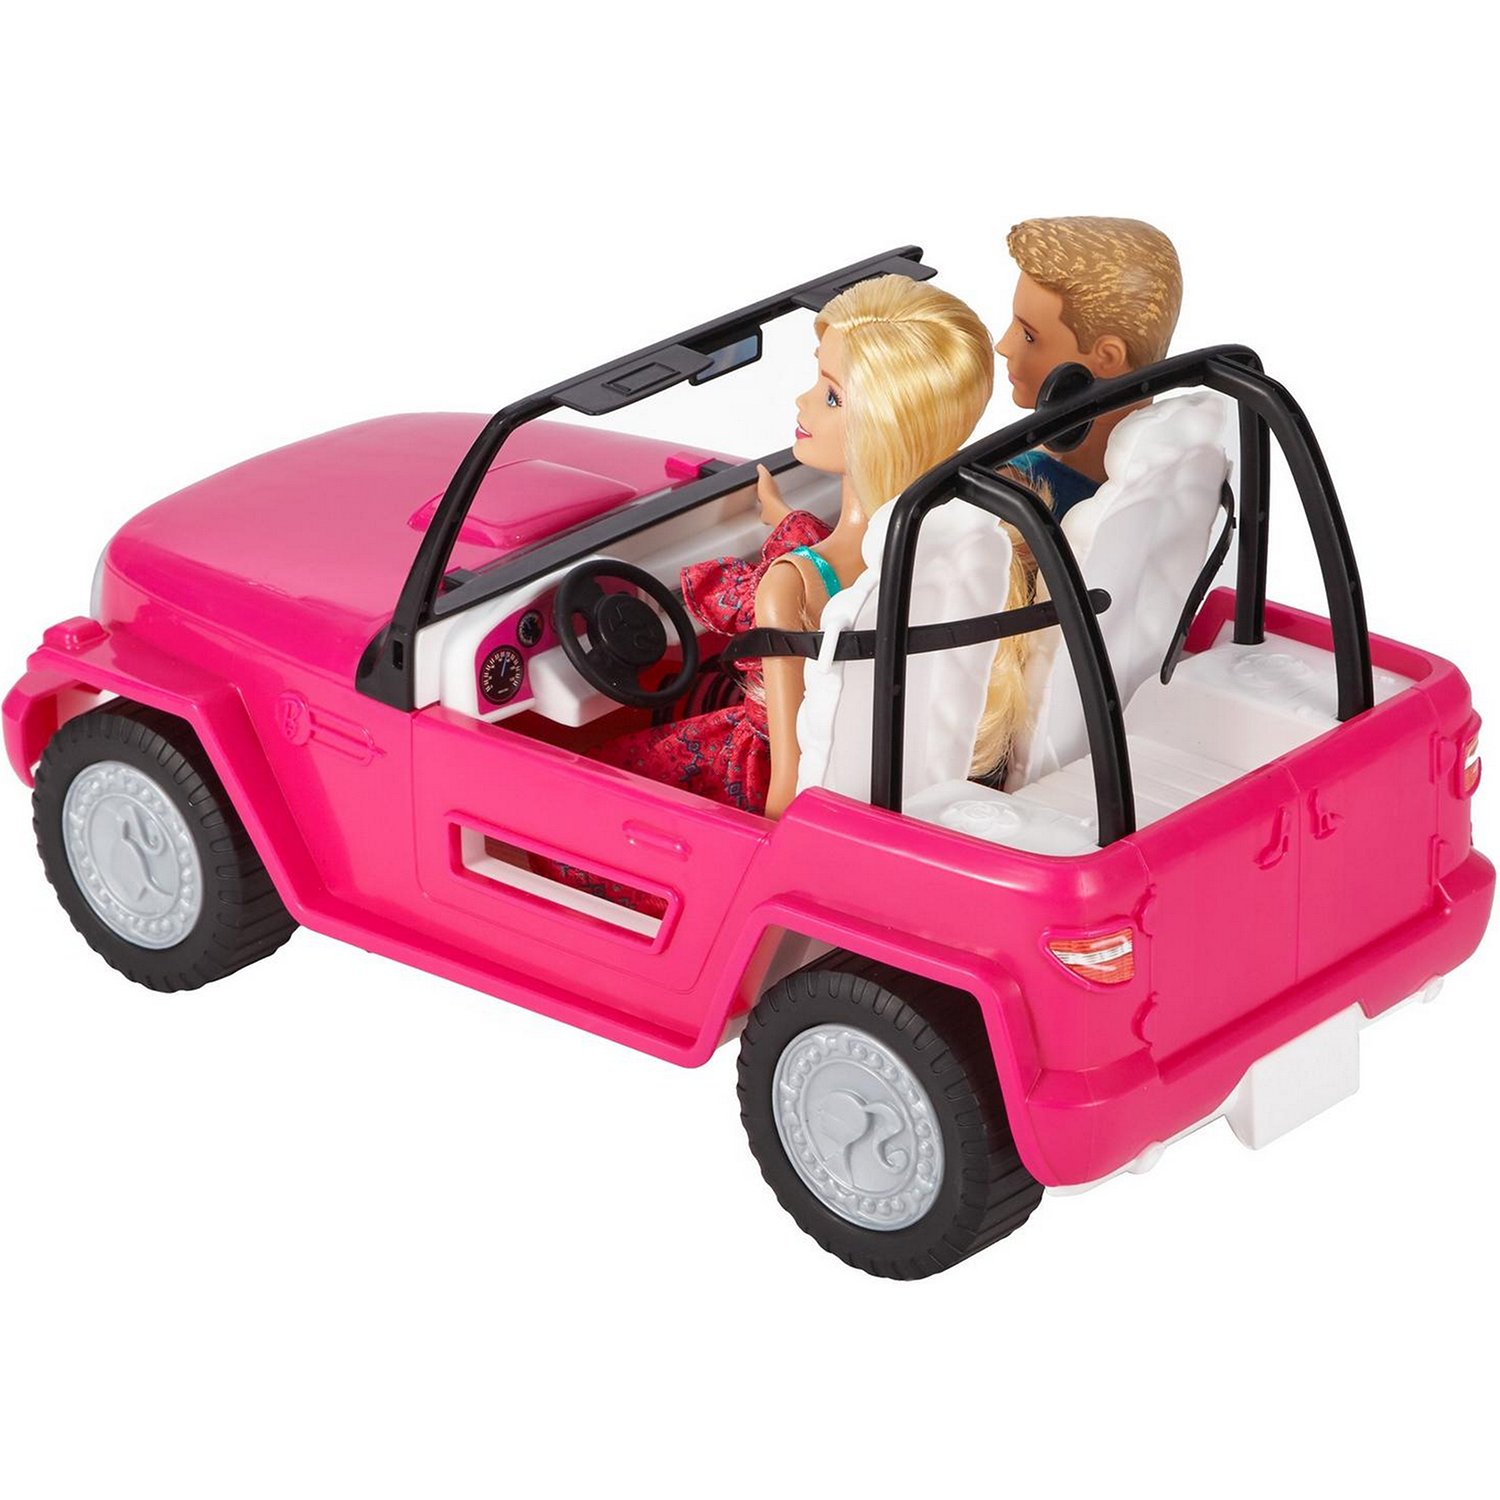 Набор Barbie CJD12 Пляжный автомобиль